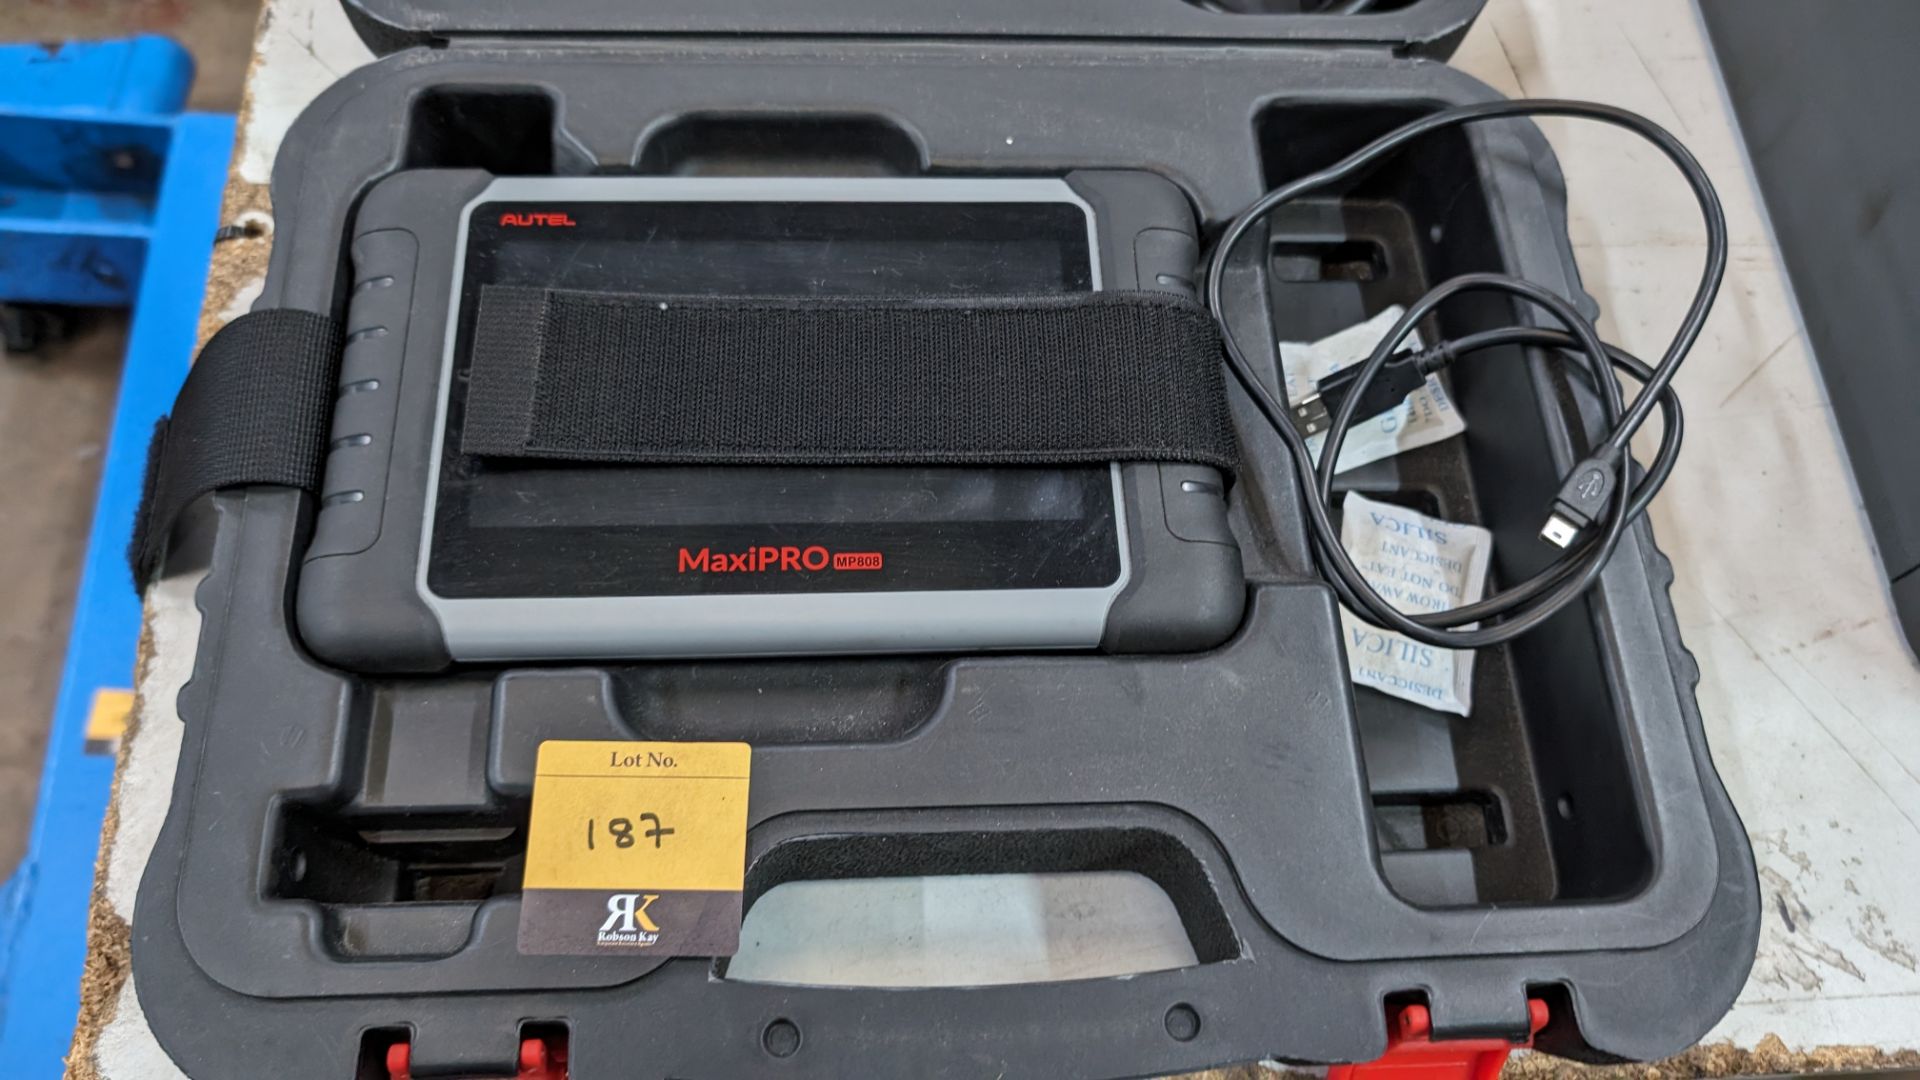 Autel MaxiPRO model MP808 touchscreen diagnostics device including case, cables & book pack - Bild 2 aus 11